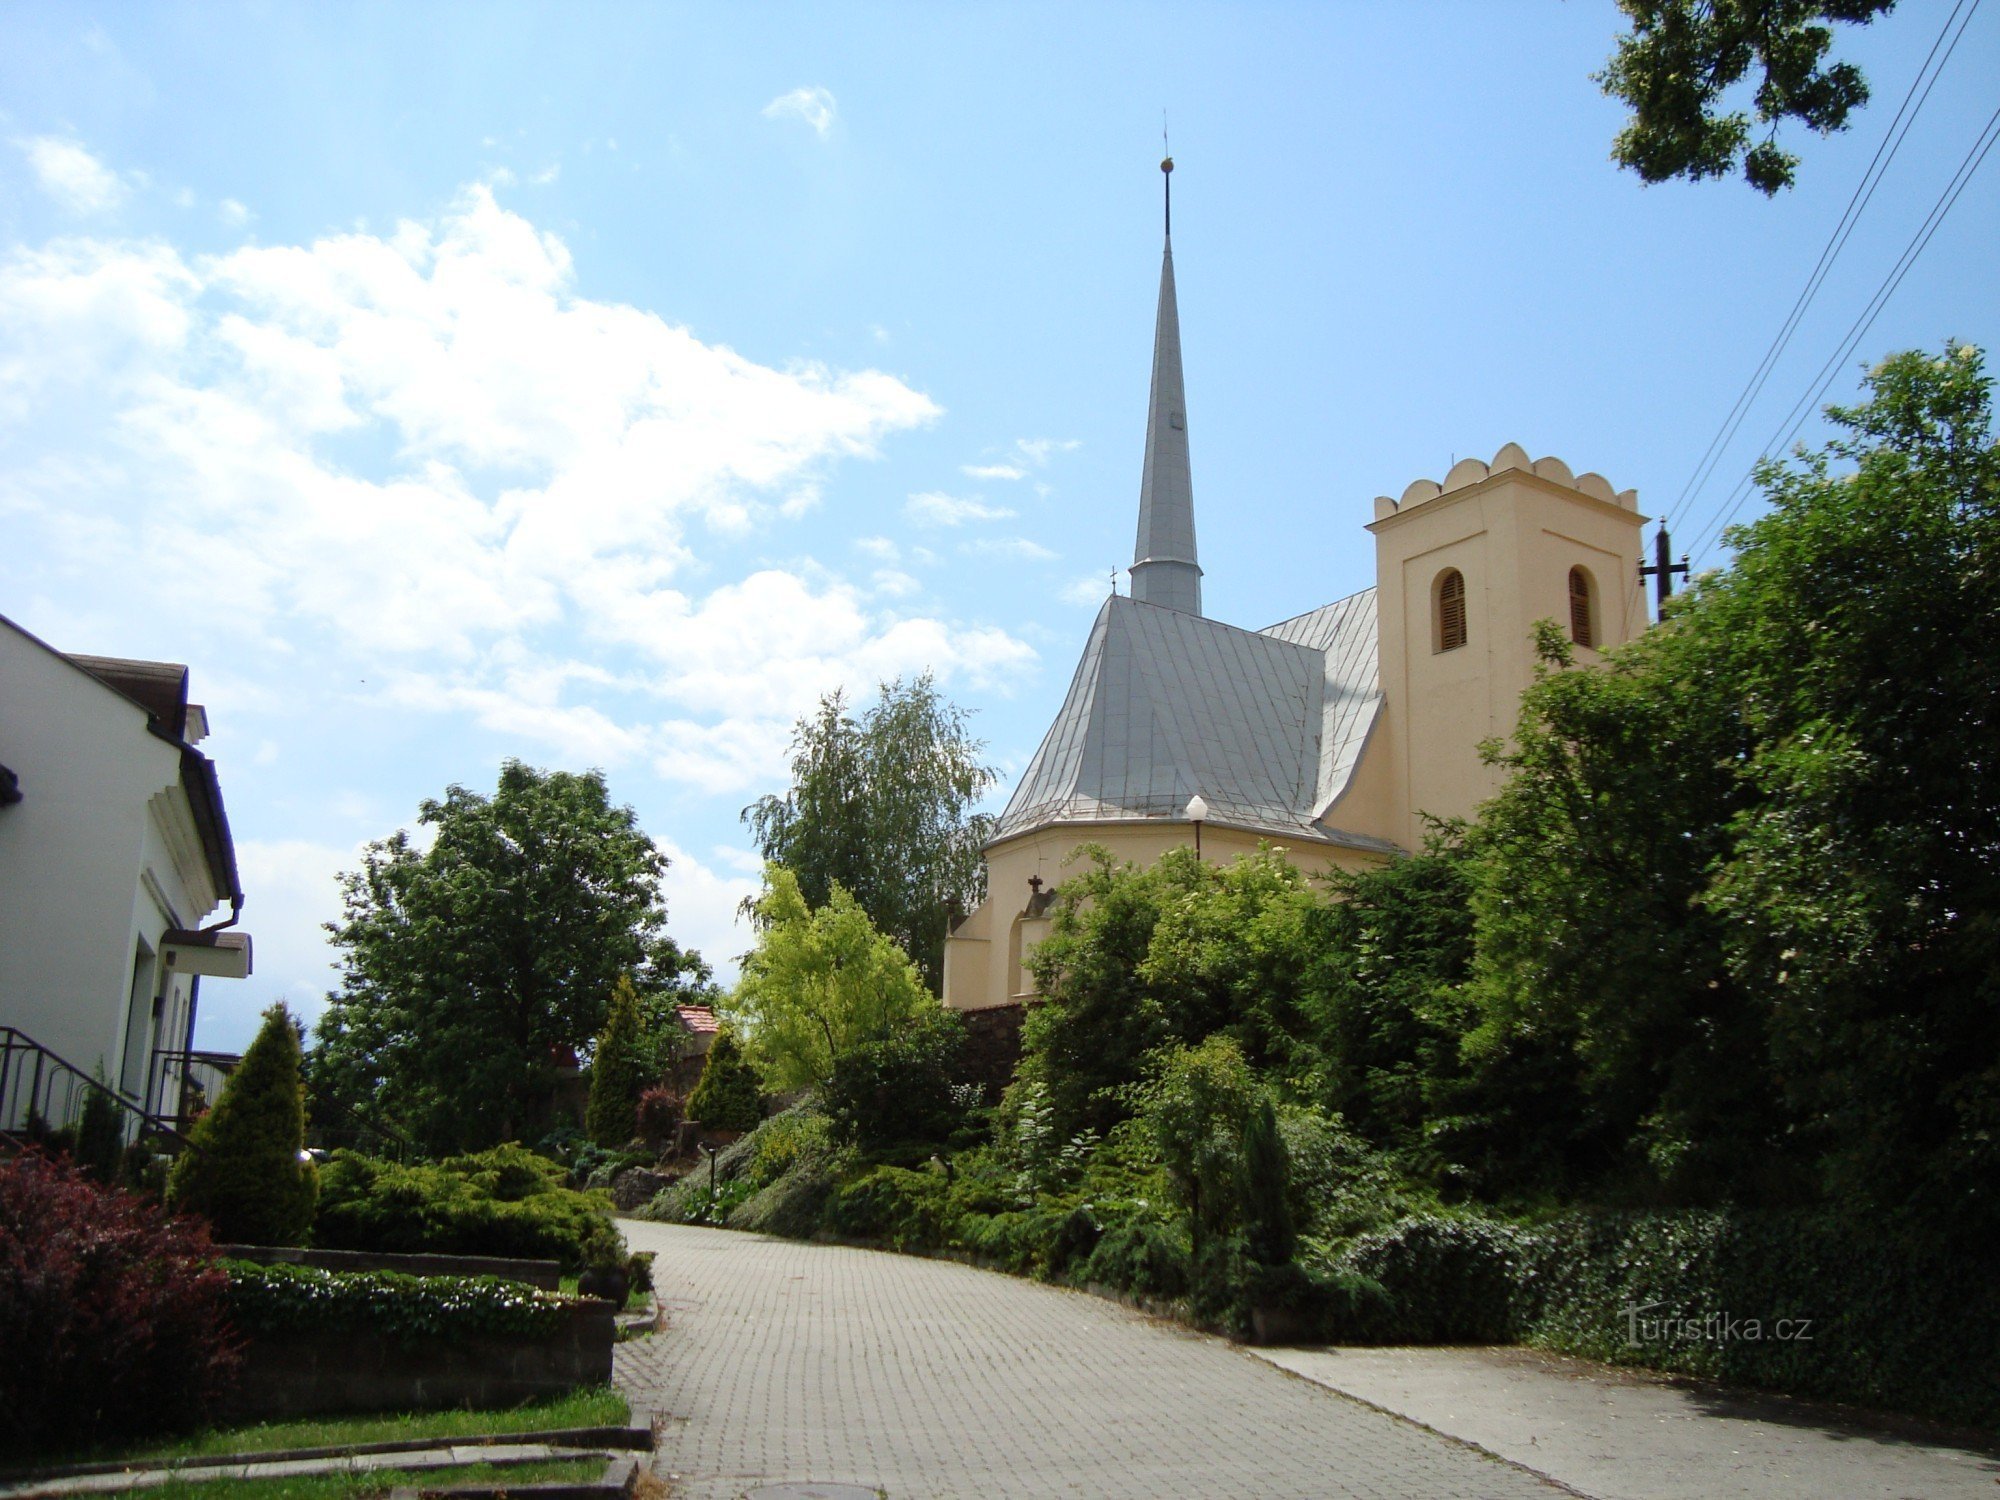 Slavonín - župna crkva sv. Andrije - Fotografija: Ulrych Mir.